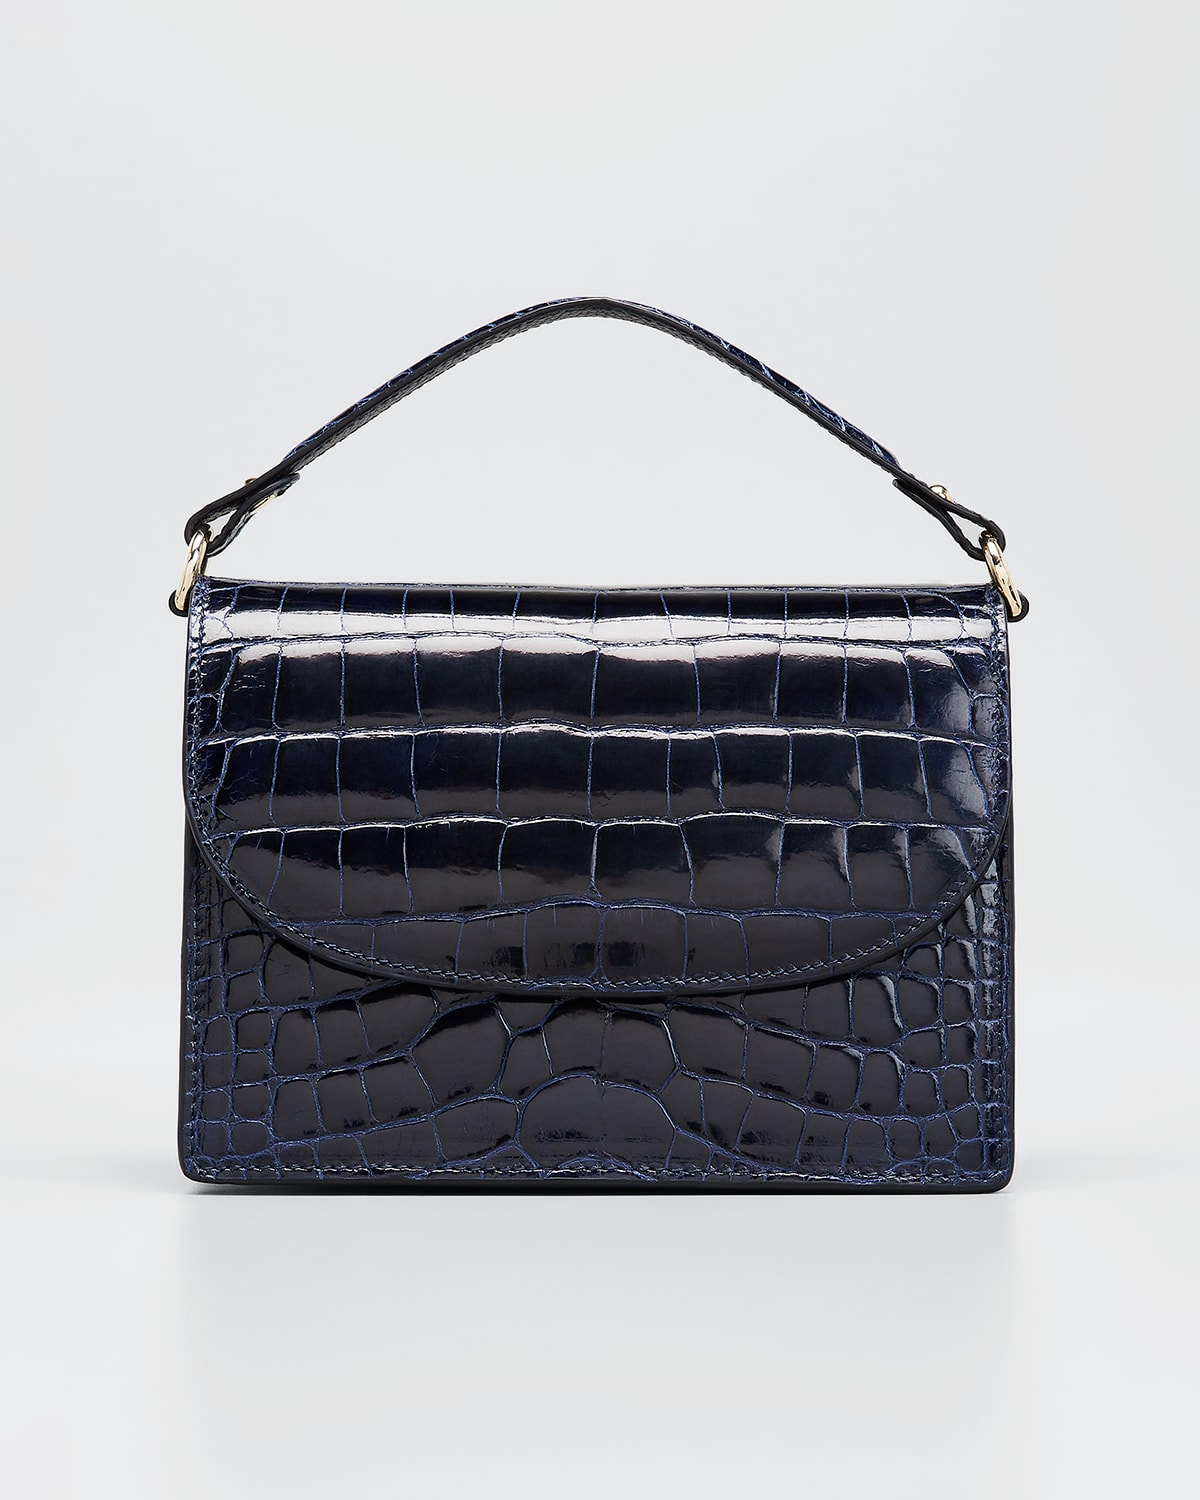 Violet purse bag, Crocodile, Glazed, Gold. Lily – MARIA OLIVER